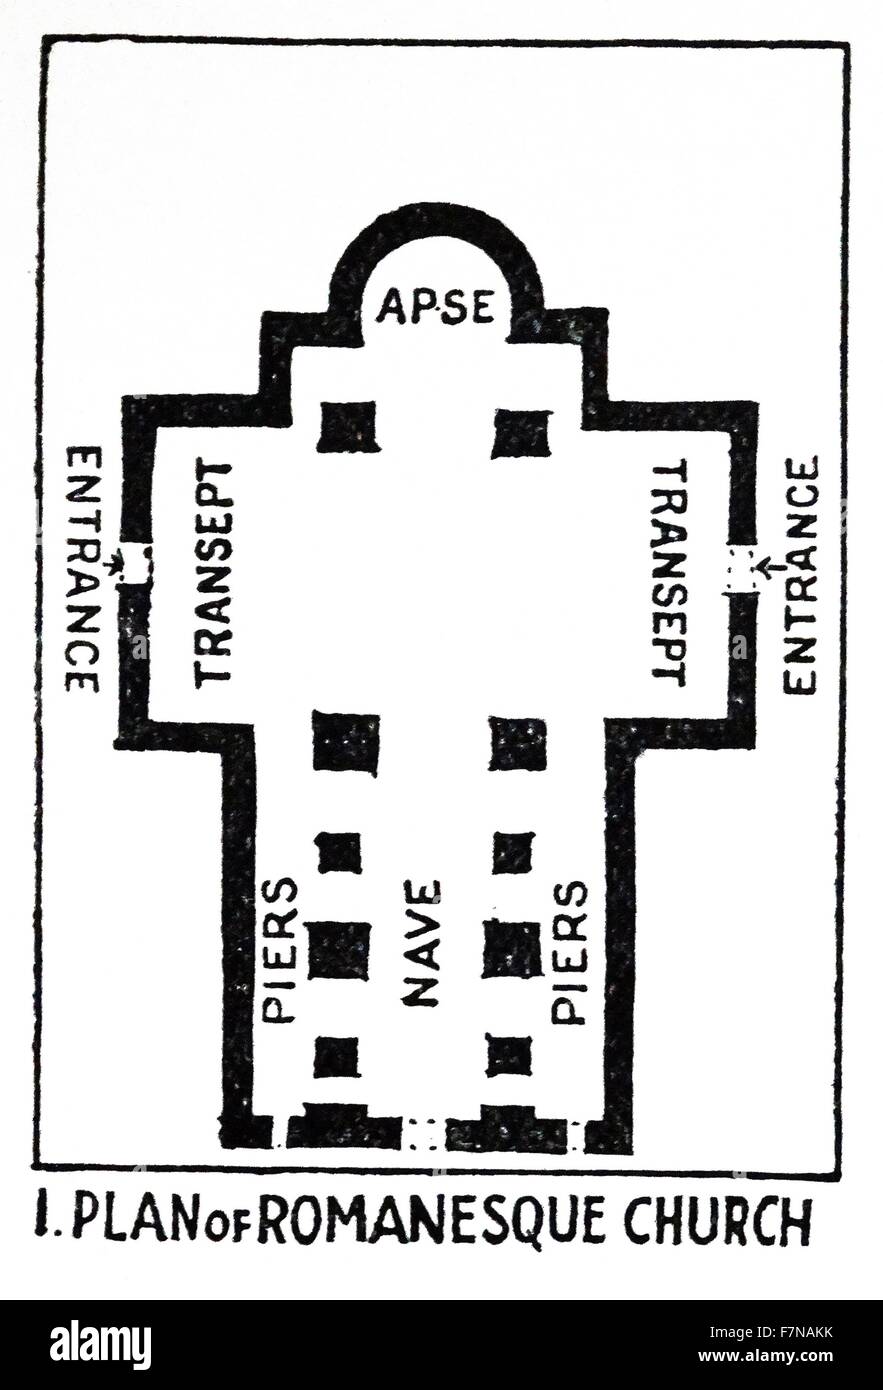 Abbildung aus einem Buch mit dem Grundriss einer romanischen Kirche. Datiert 1913 Stockfoto